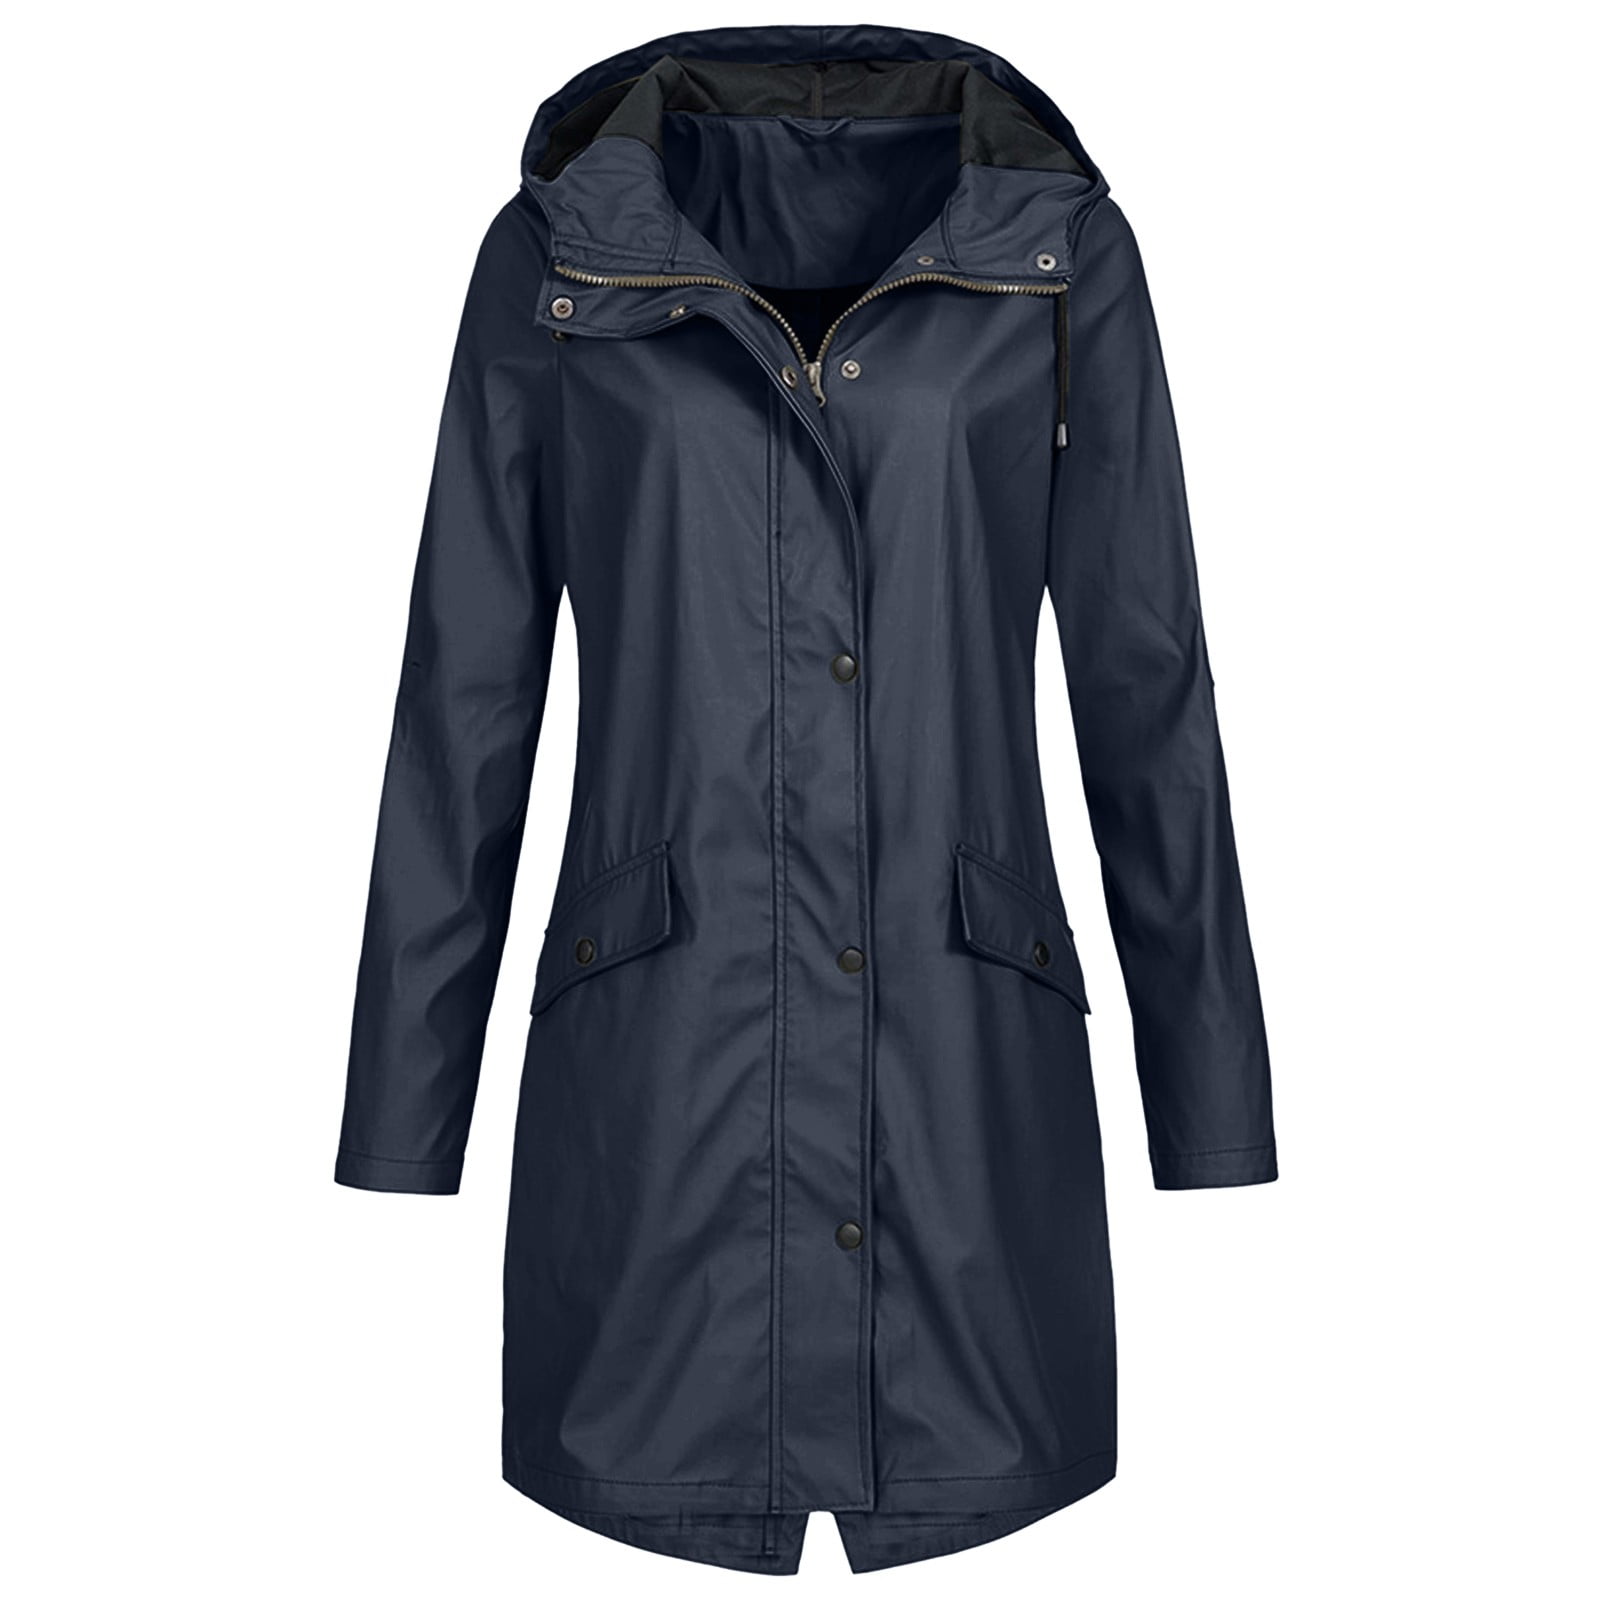 pseurrlt Women Solid Long Rain Jackets Plus Size Waterproof with Hood ...